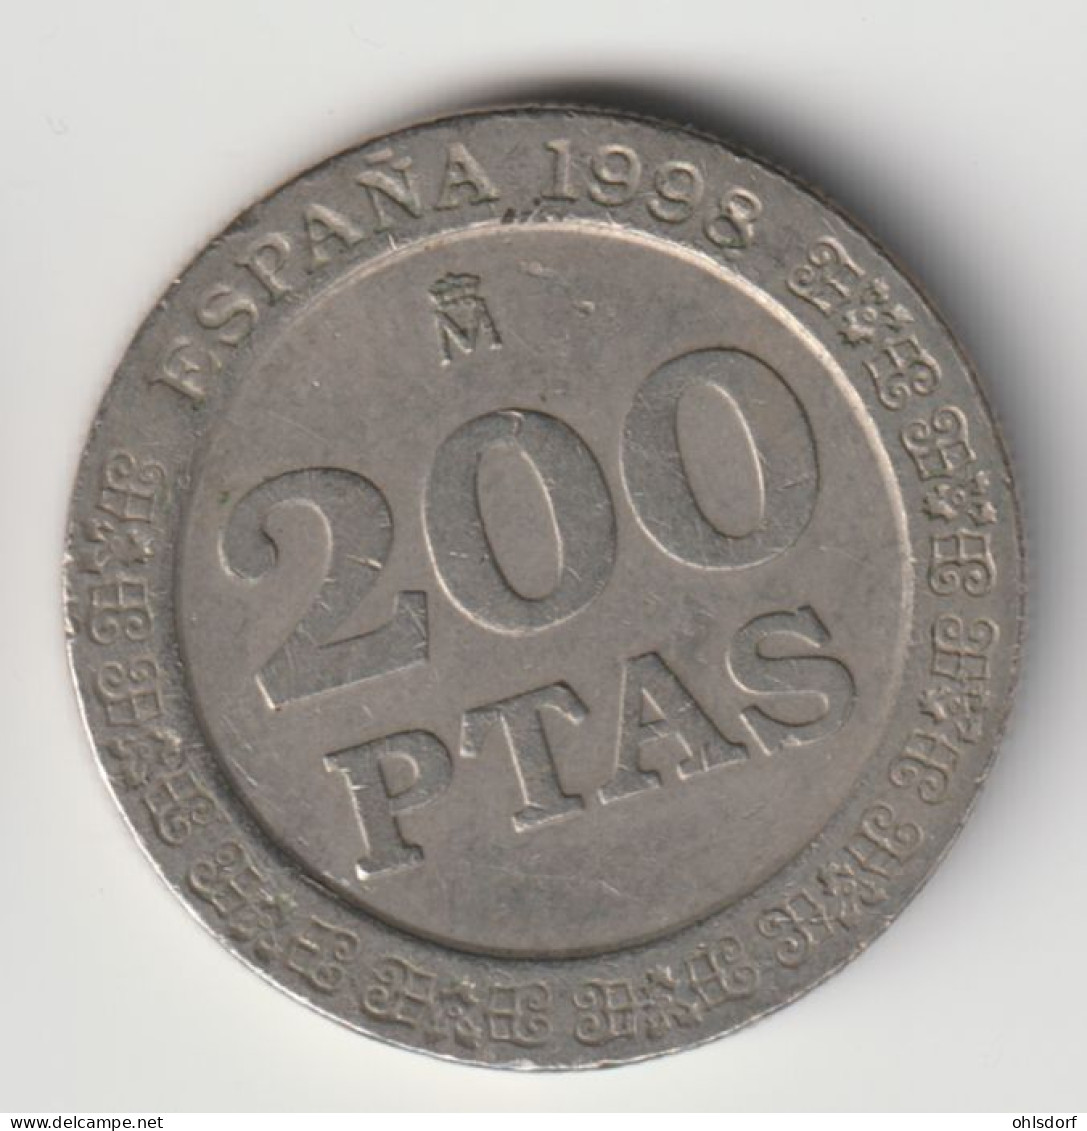 ESPANA 1998: 200 Pesetas, KM 992 - 200 Peseta